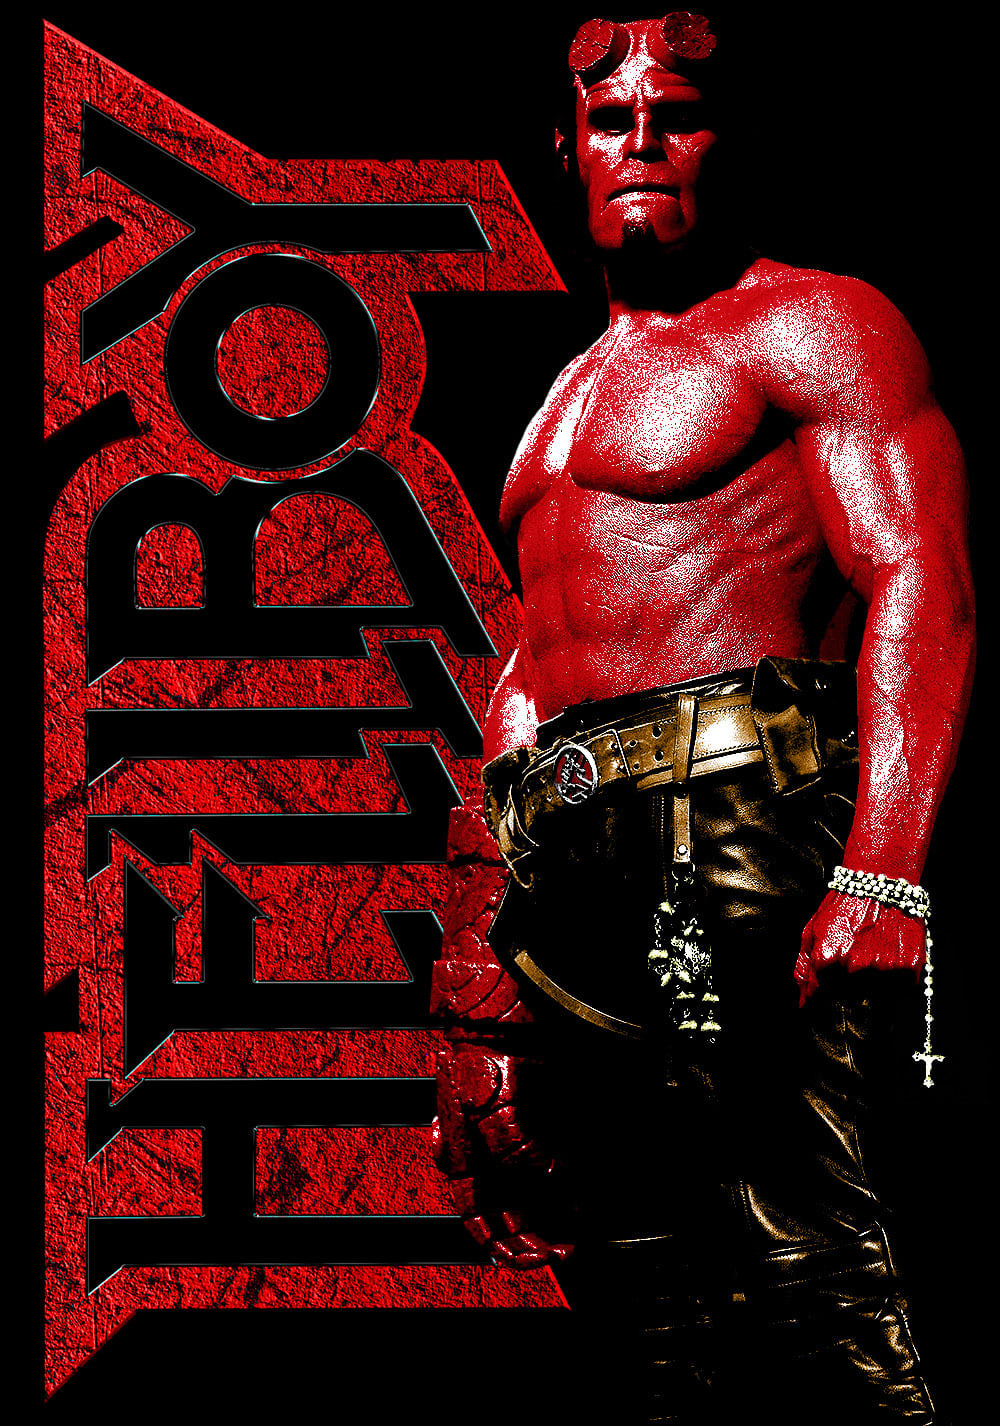 Hellboy เฮลล์บอย ฮีโร่พันธุ์นรก (2004)